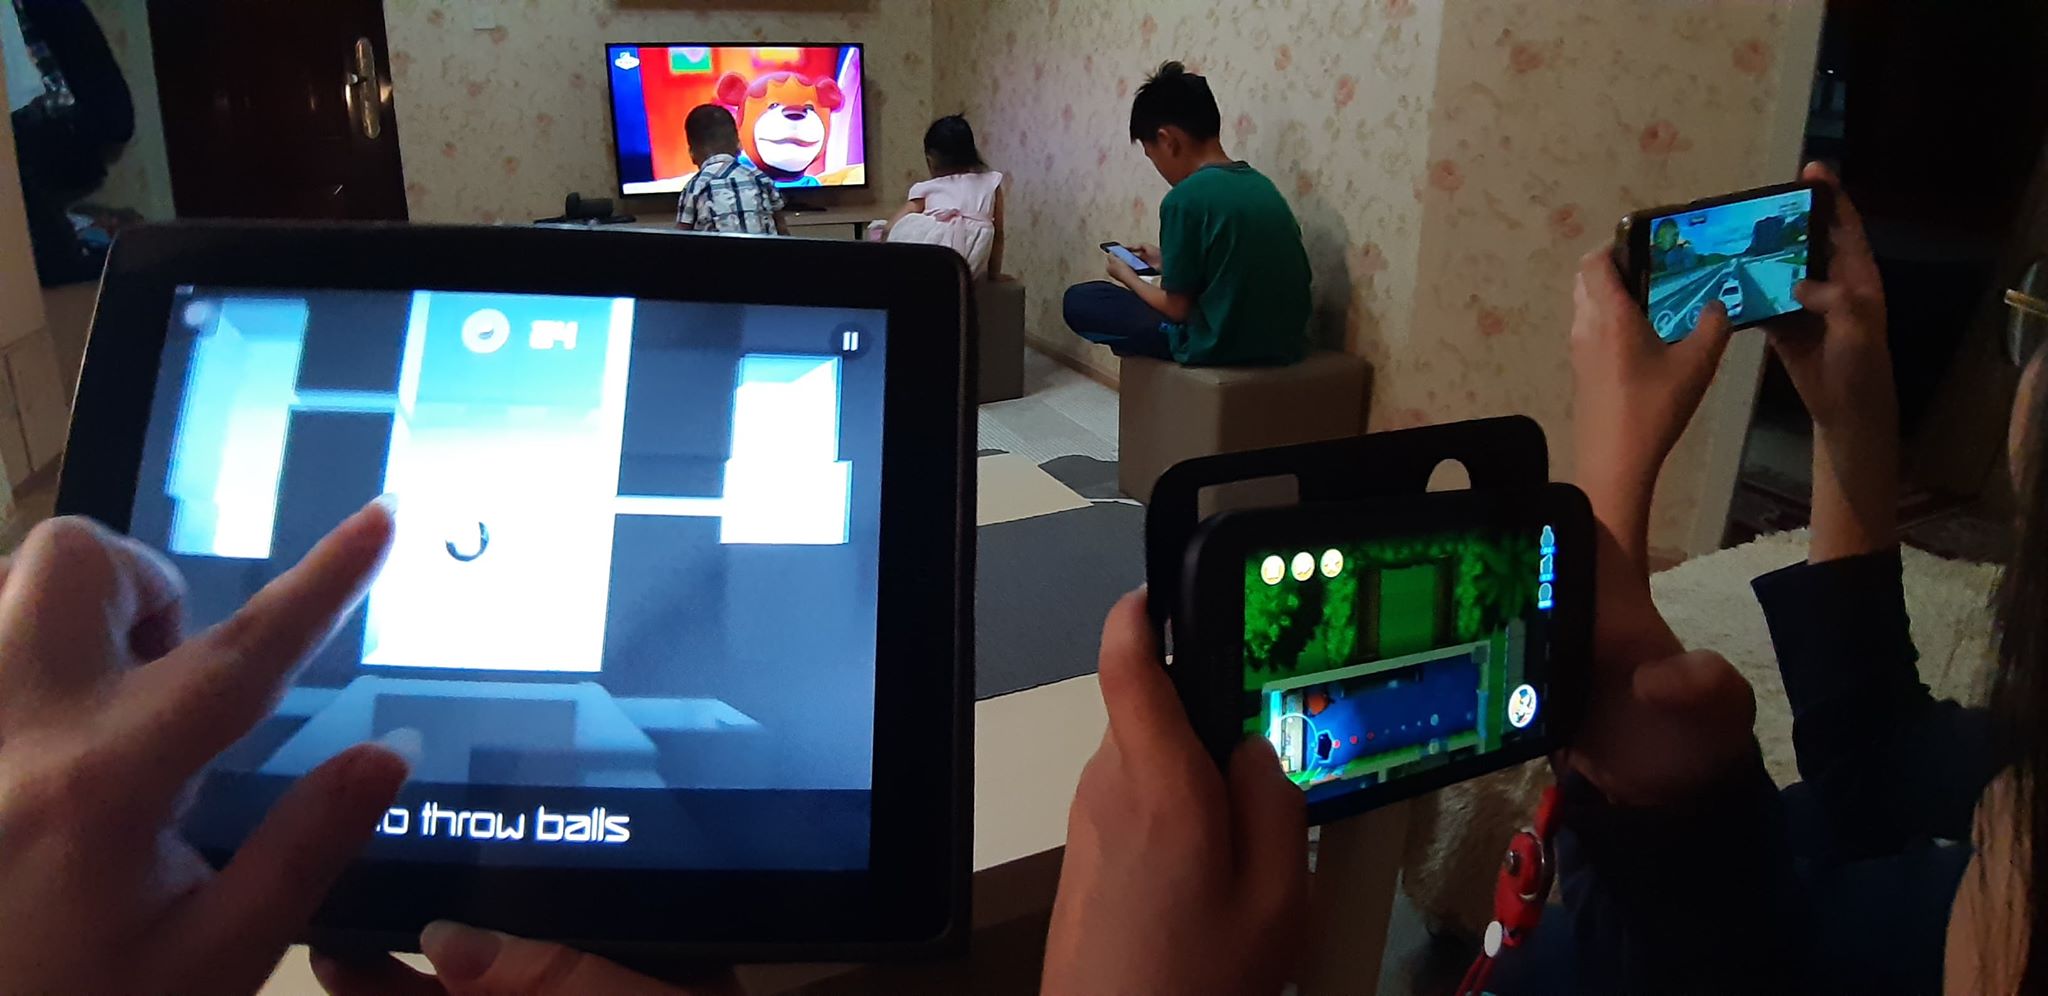 Βίντεο-σοκ από την Κίνα: Παιδί απειλεί τον πατέρα του με μπαλτά επειδή του πήρε το κινητό